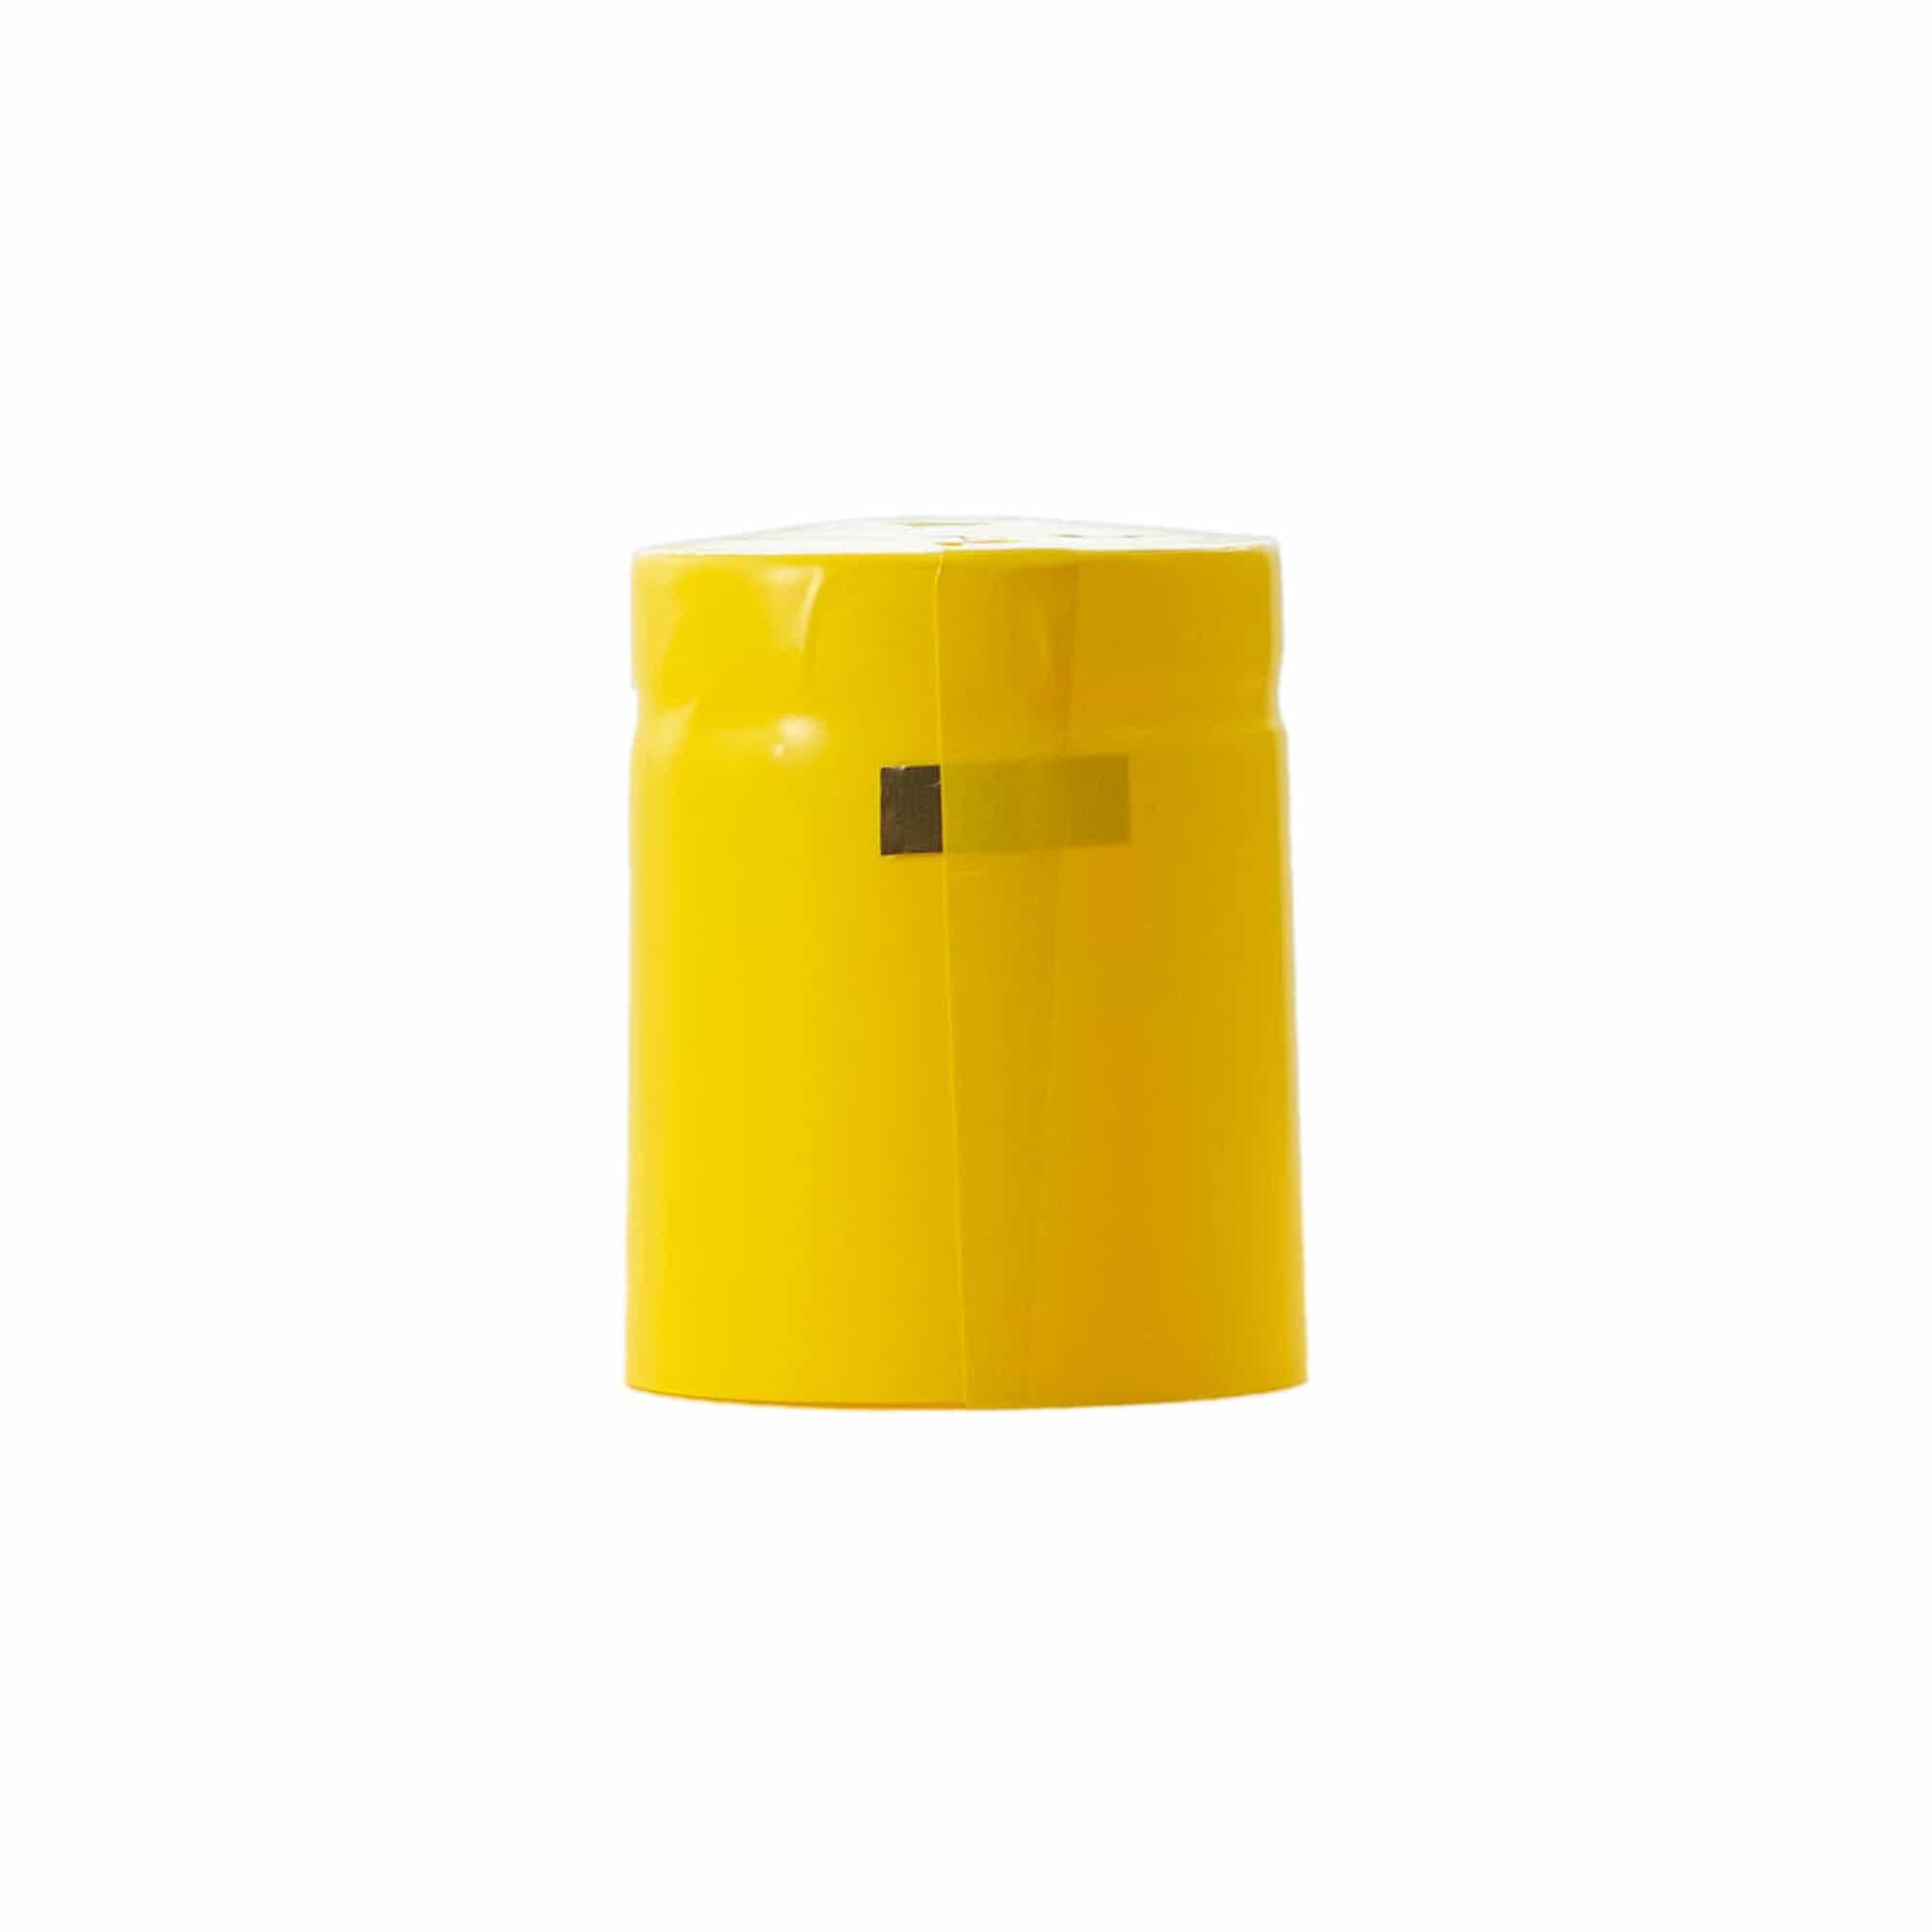 Kapturek termokurczliwy 32x41, tworzywo sztuczne PVC, kolor żółty